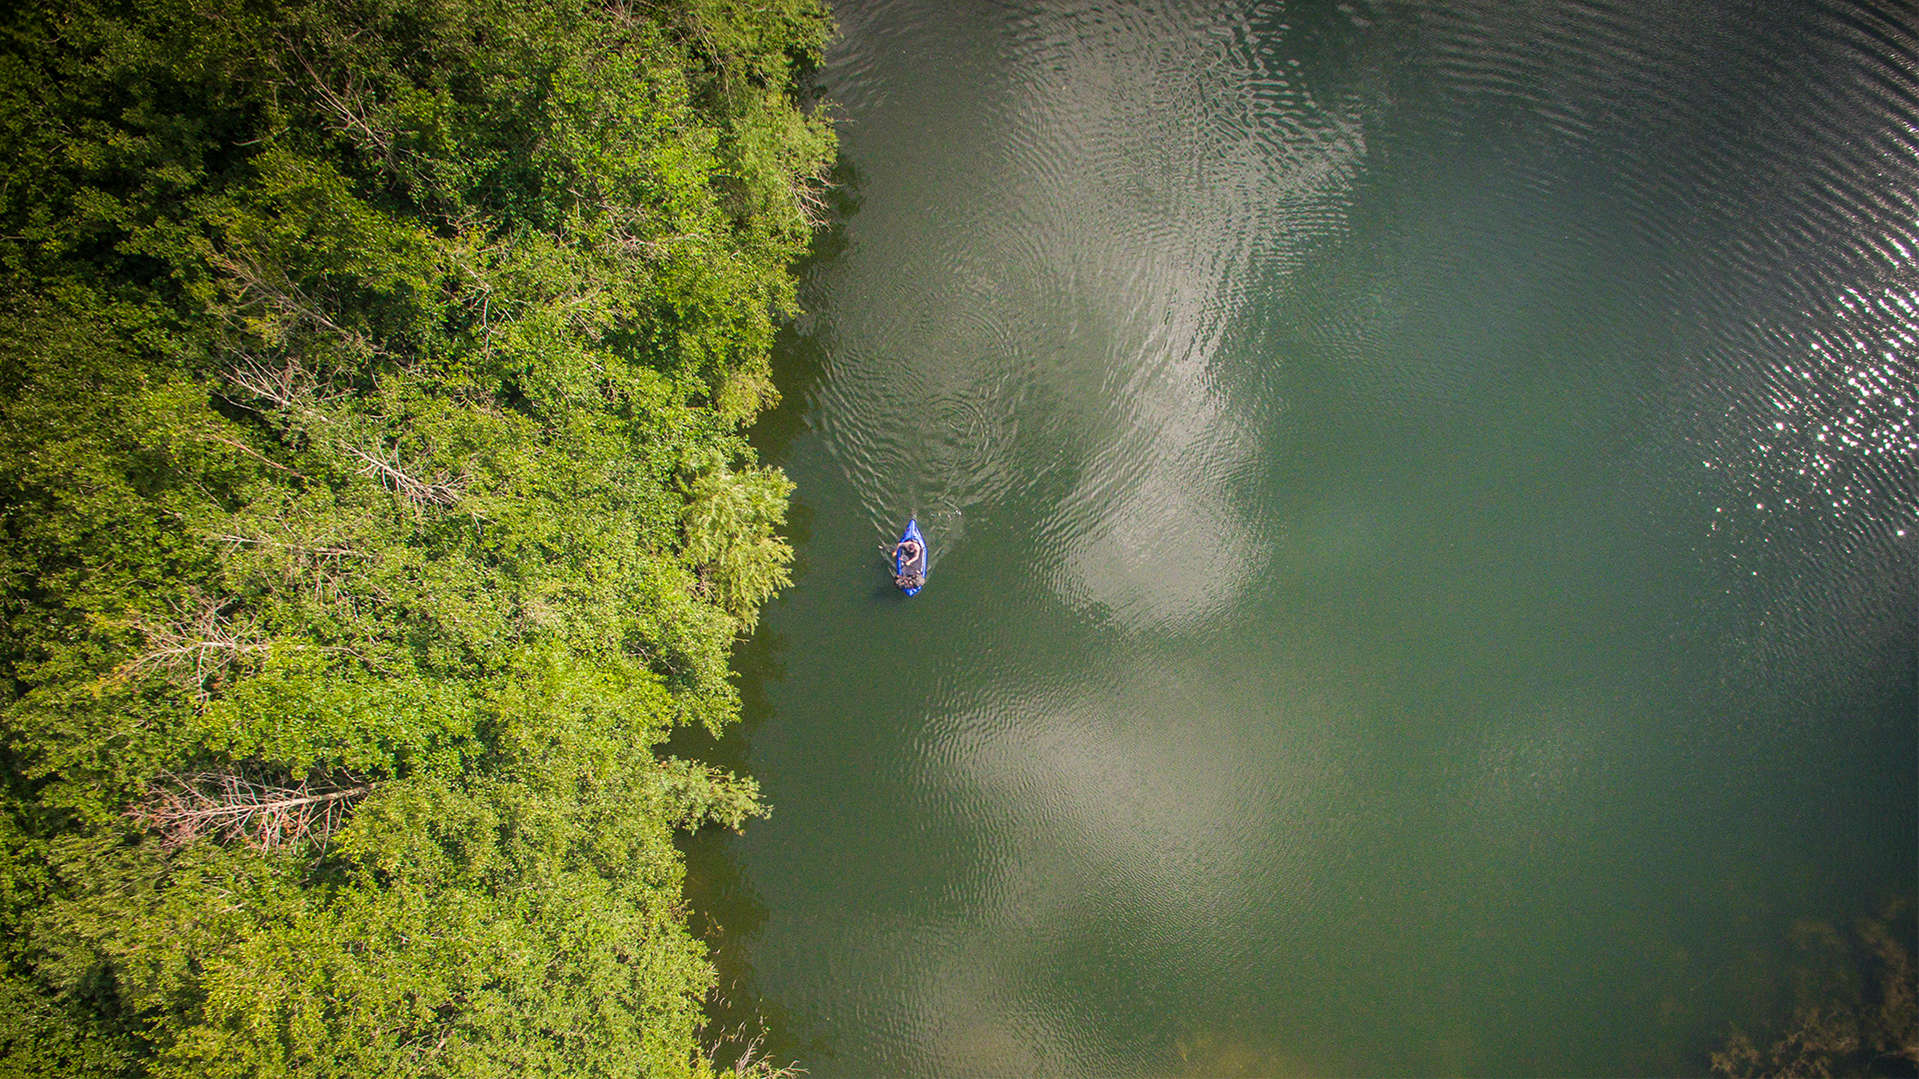 Udviklingsforedrag af Erik B. Jørgensen. i sin packraft i sø, set fra drone